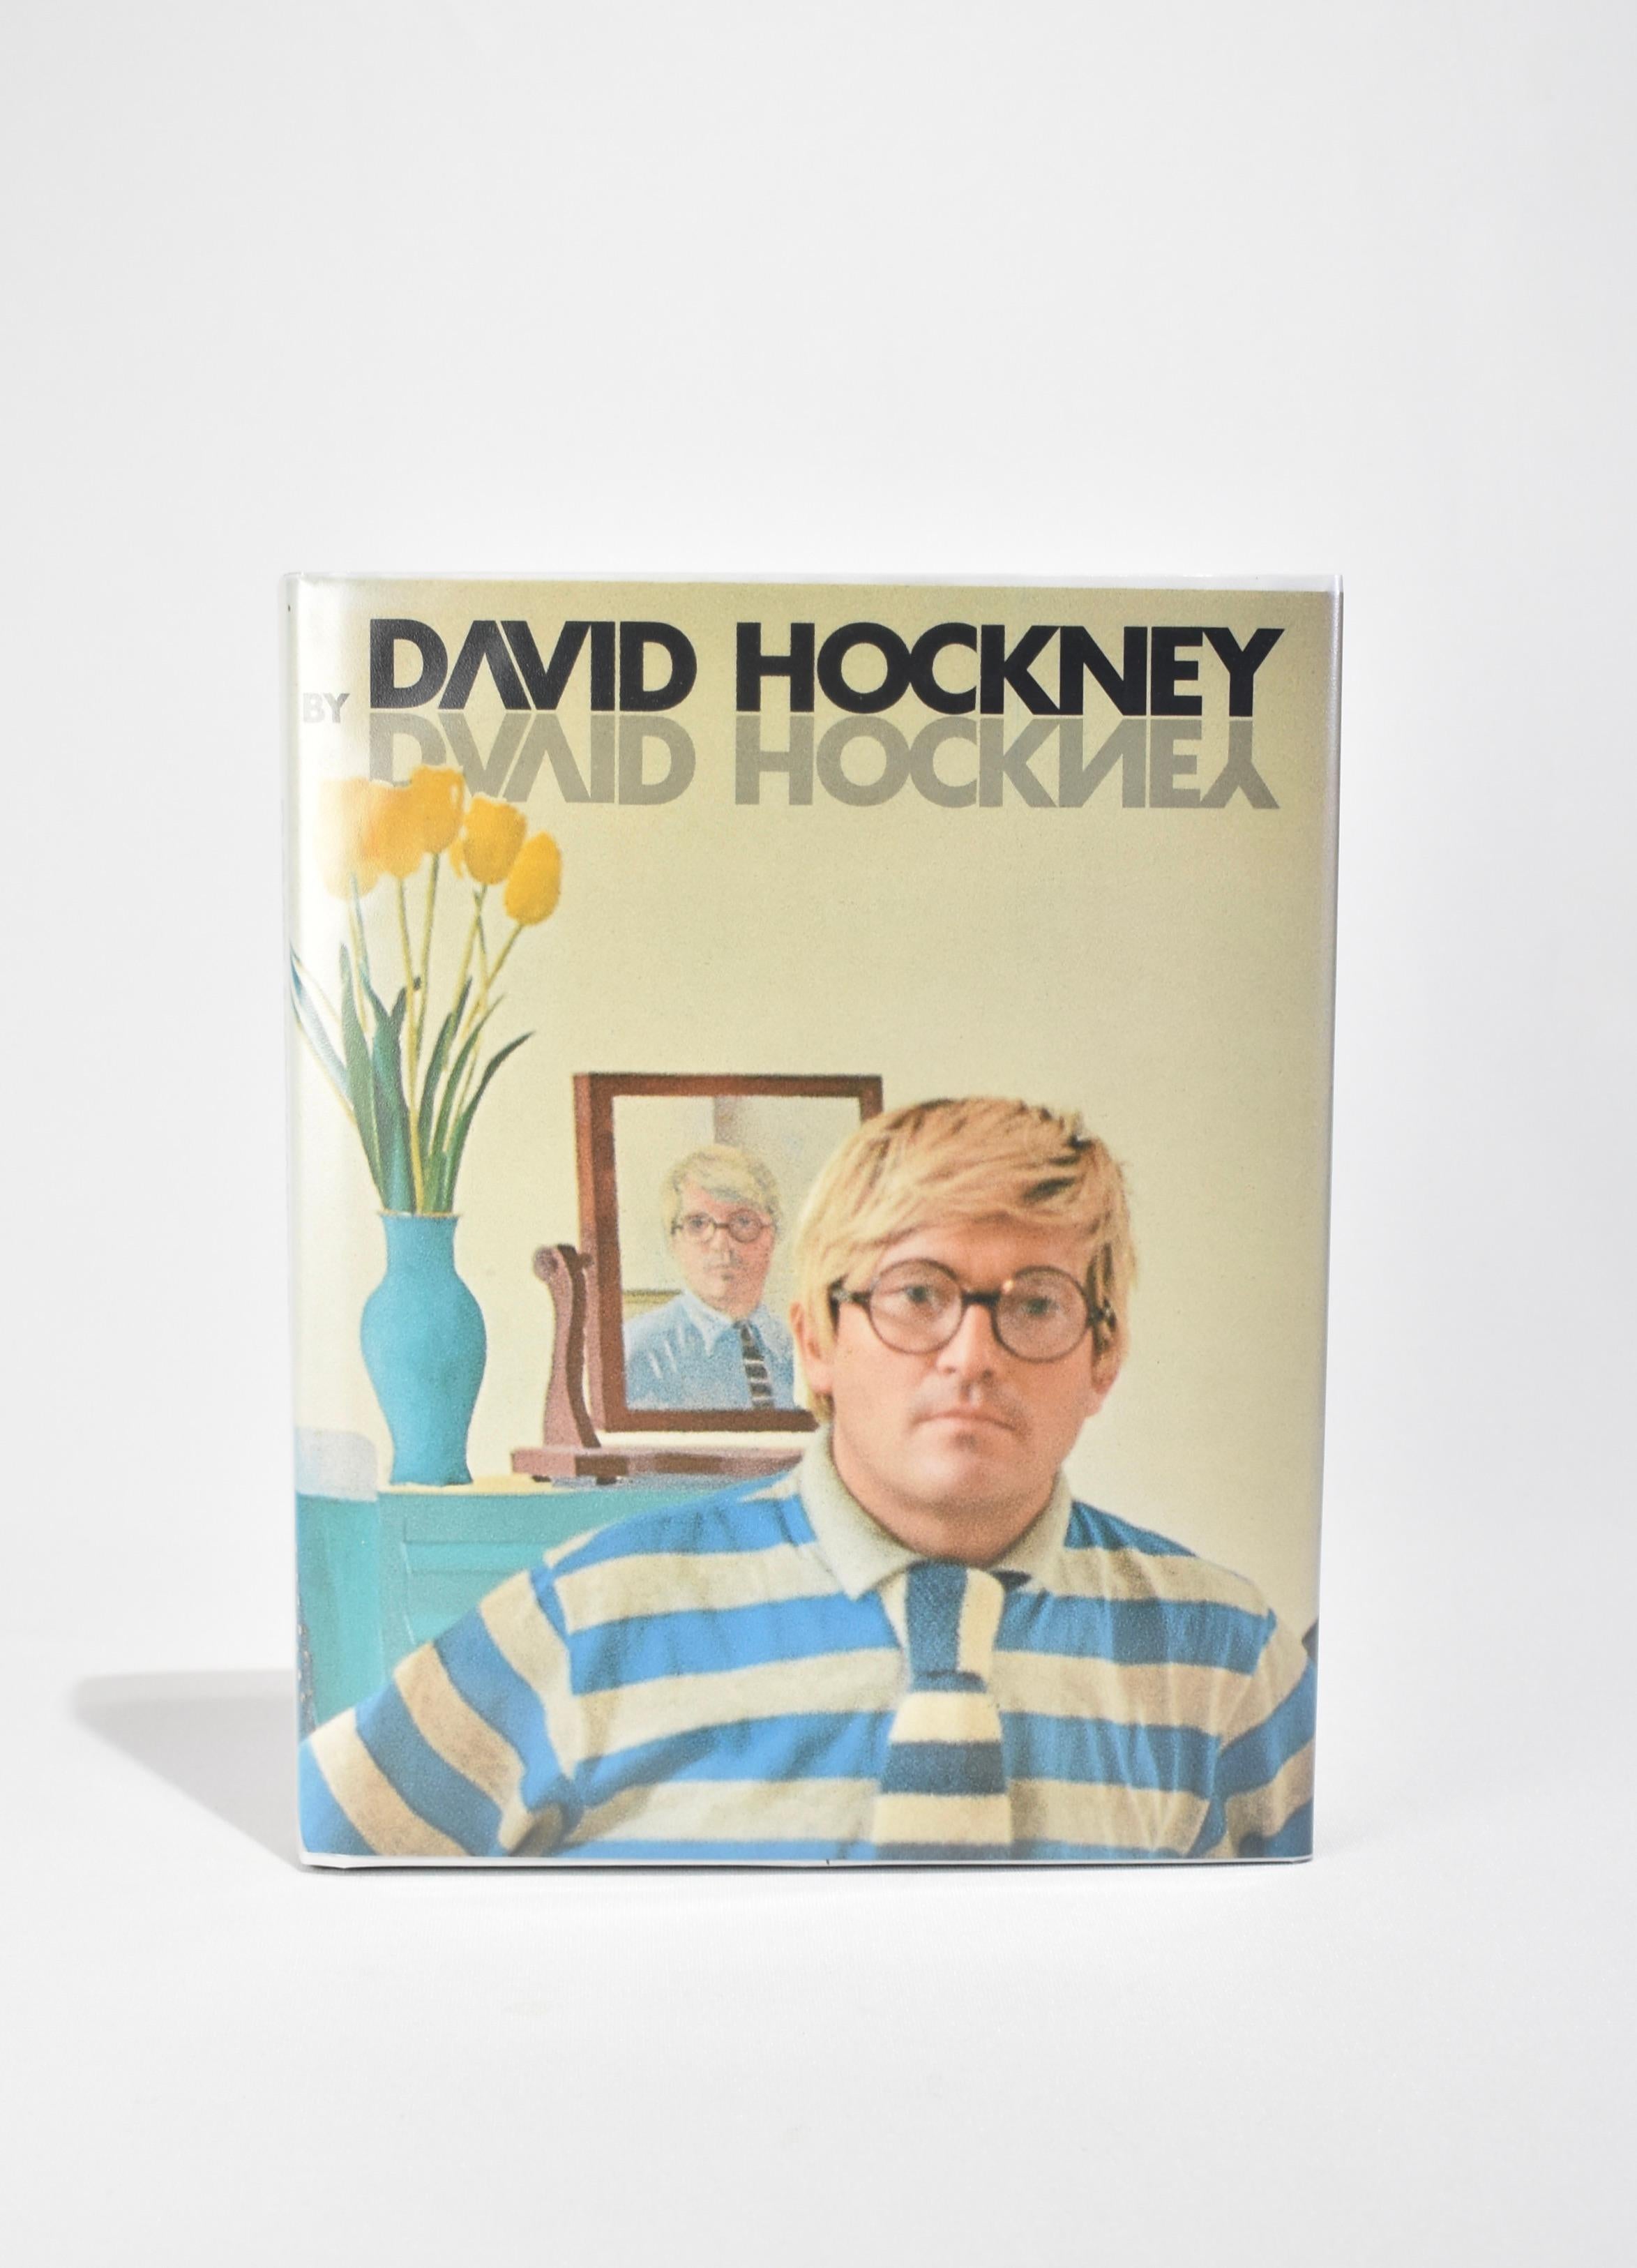 David Hockney by David Hockney 1976 2